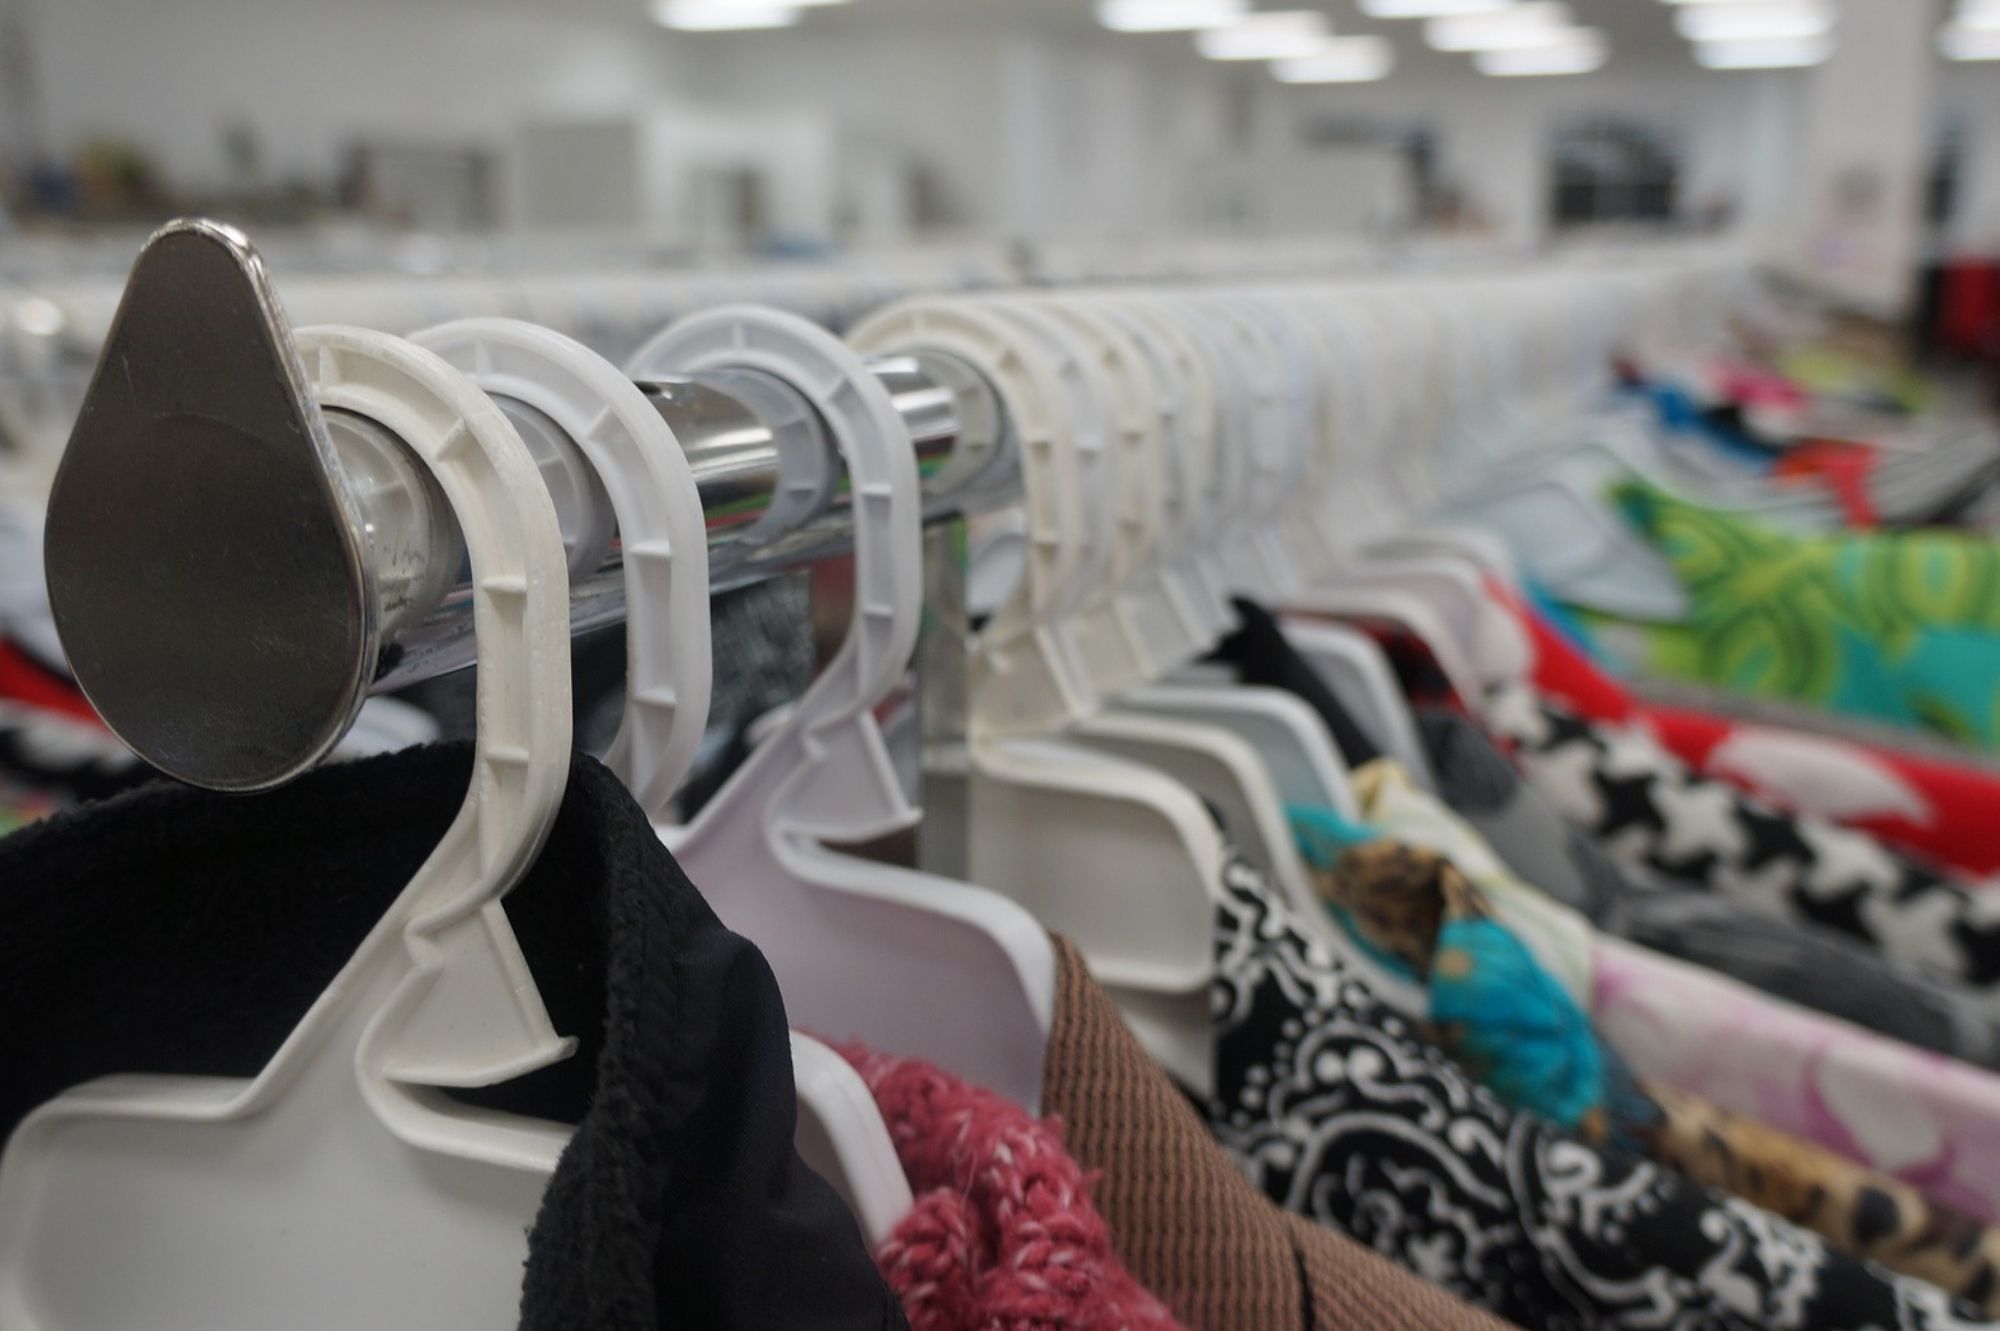 В районных управах Таллинна идёт сбор одежды и предметов первой необходимости для беженцев из Украины. Автор/Источник фото: Pixabay.com.